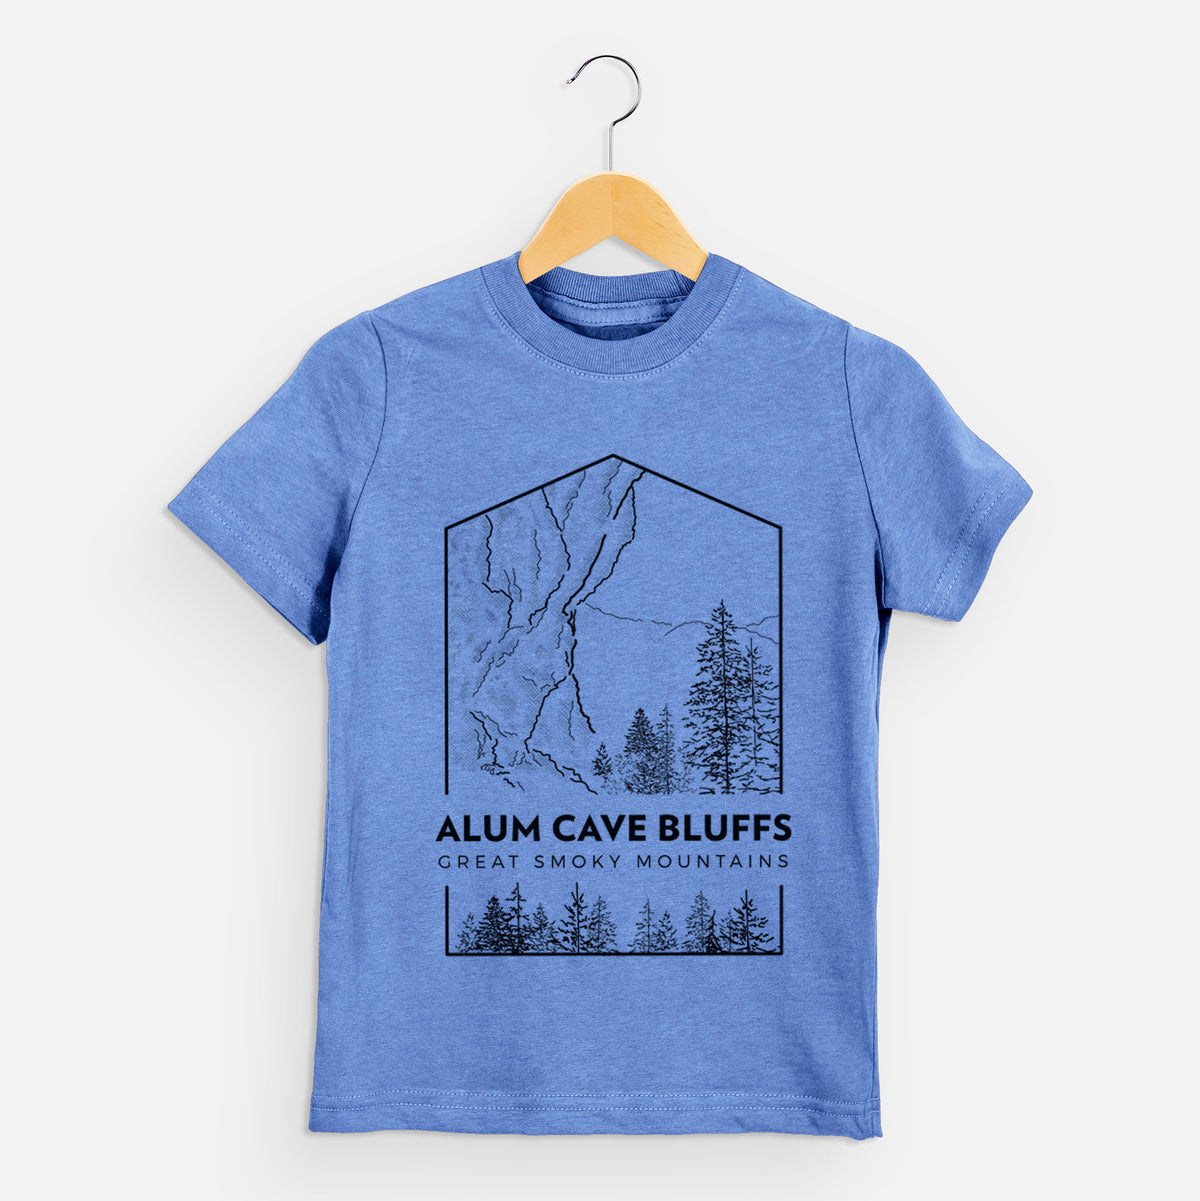 Alum Cave Bluffs - Great Smoky Mountains National Park - Kids Shirt